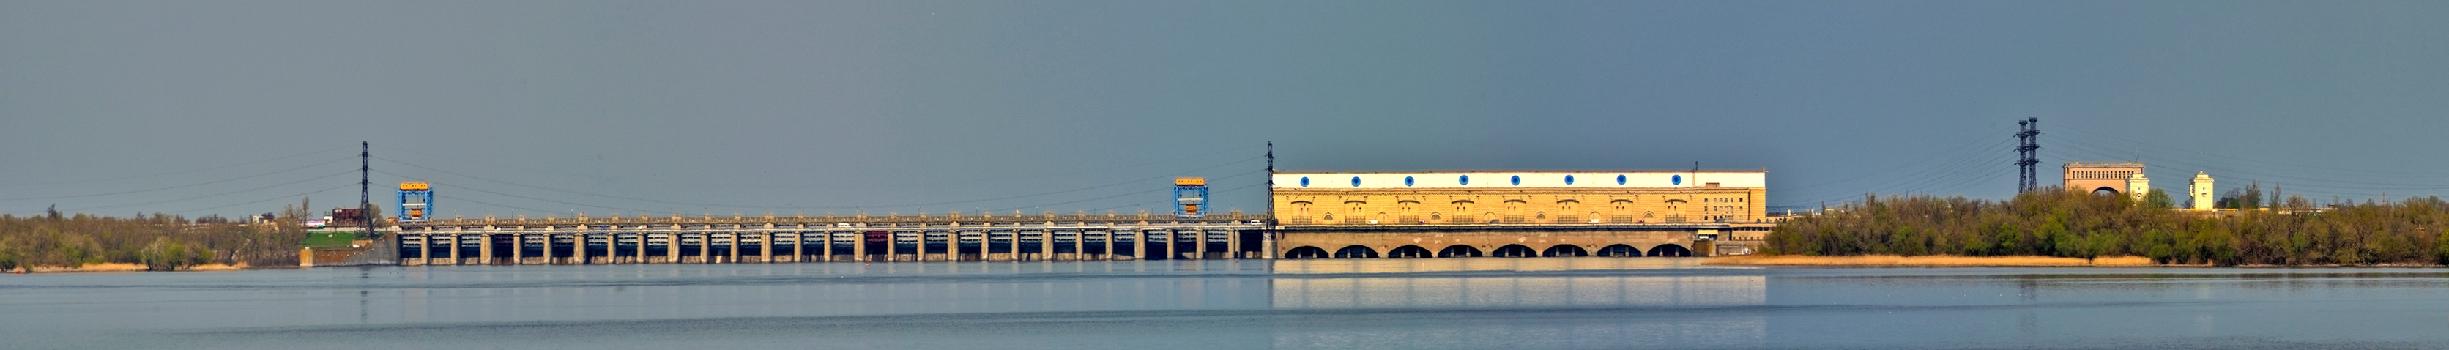 Centrale hydroélectrique de Kakhovka